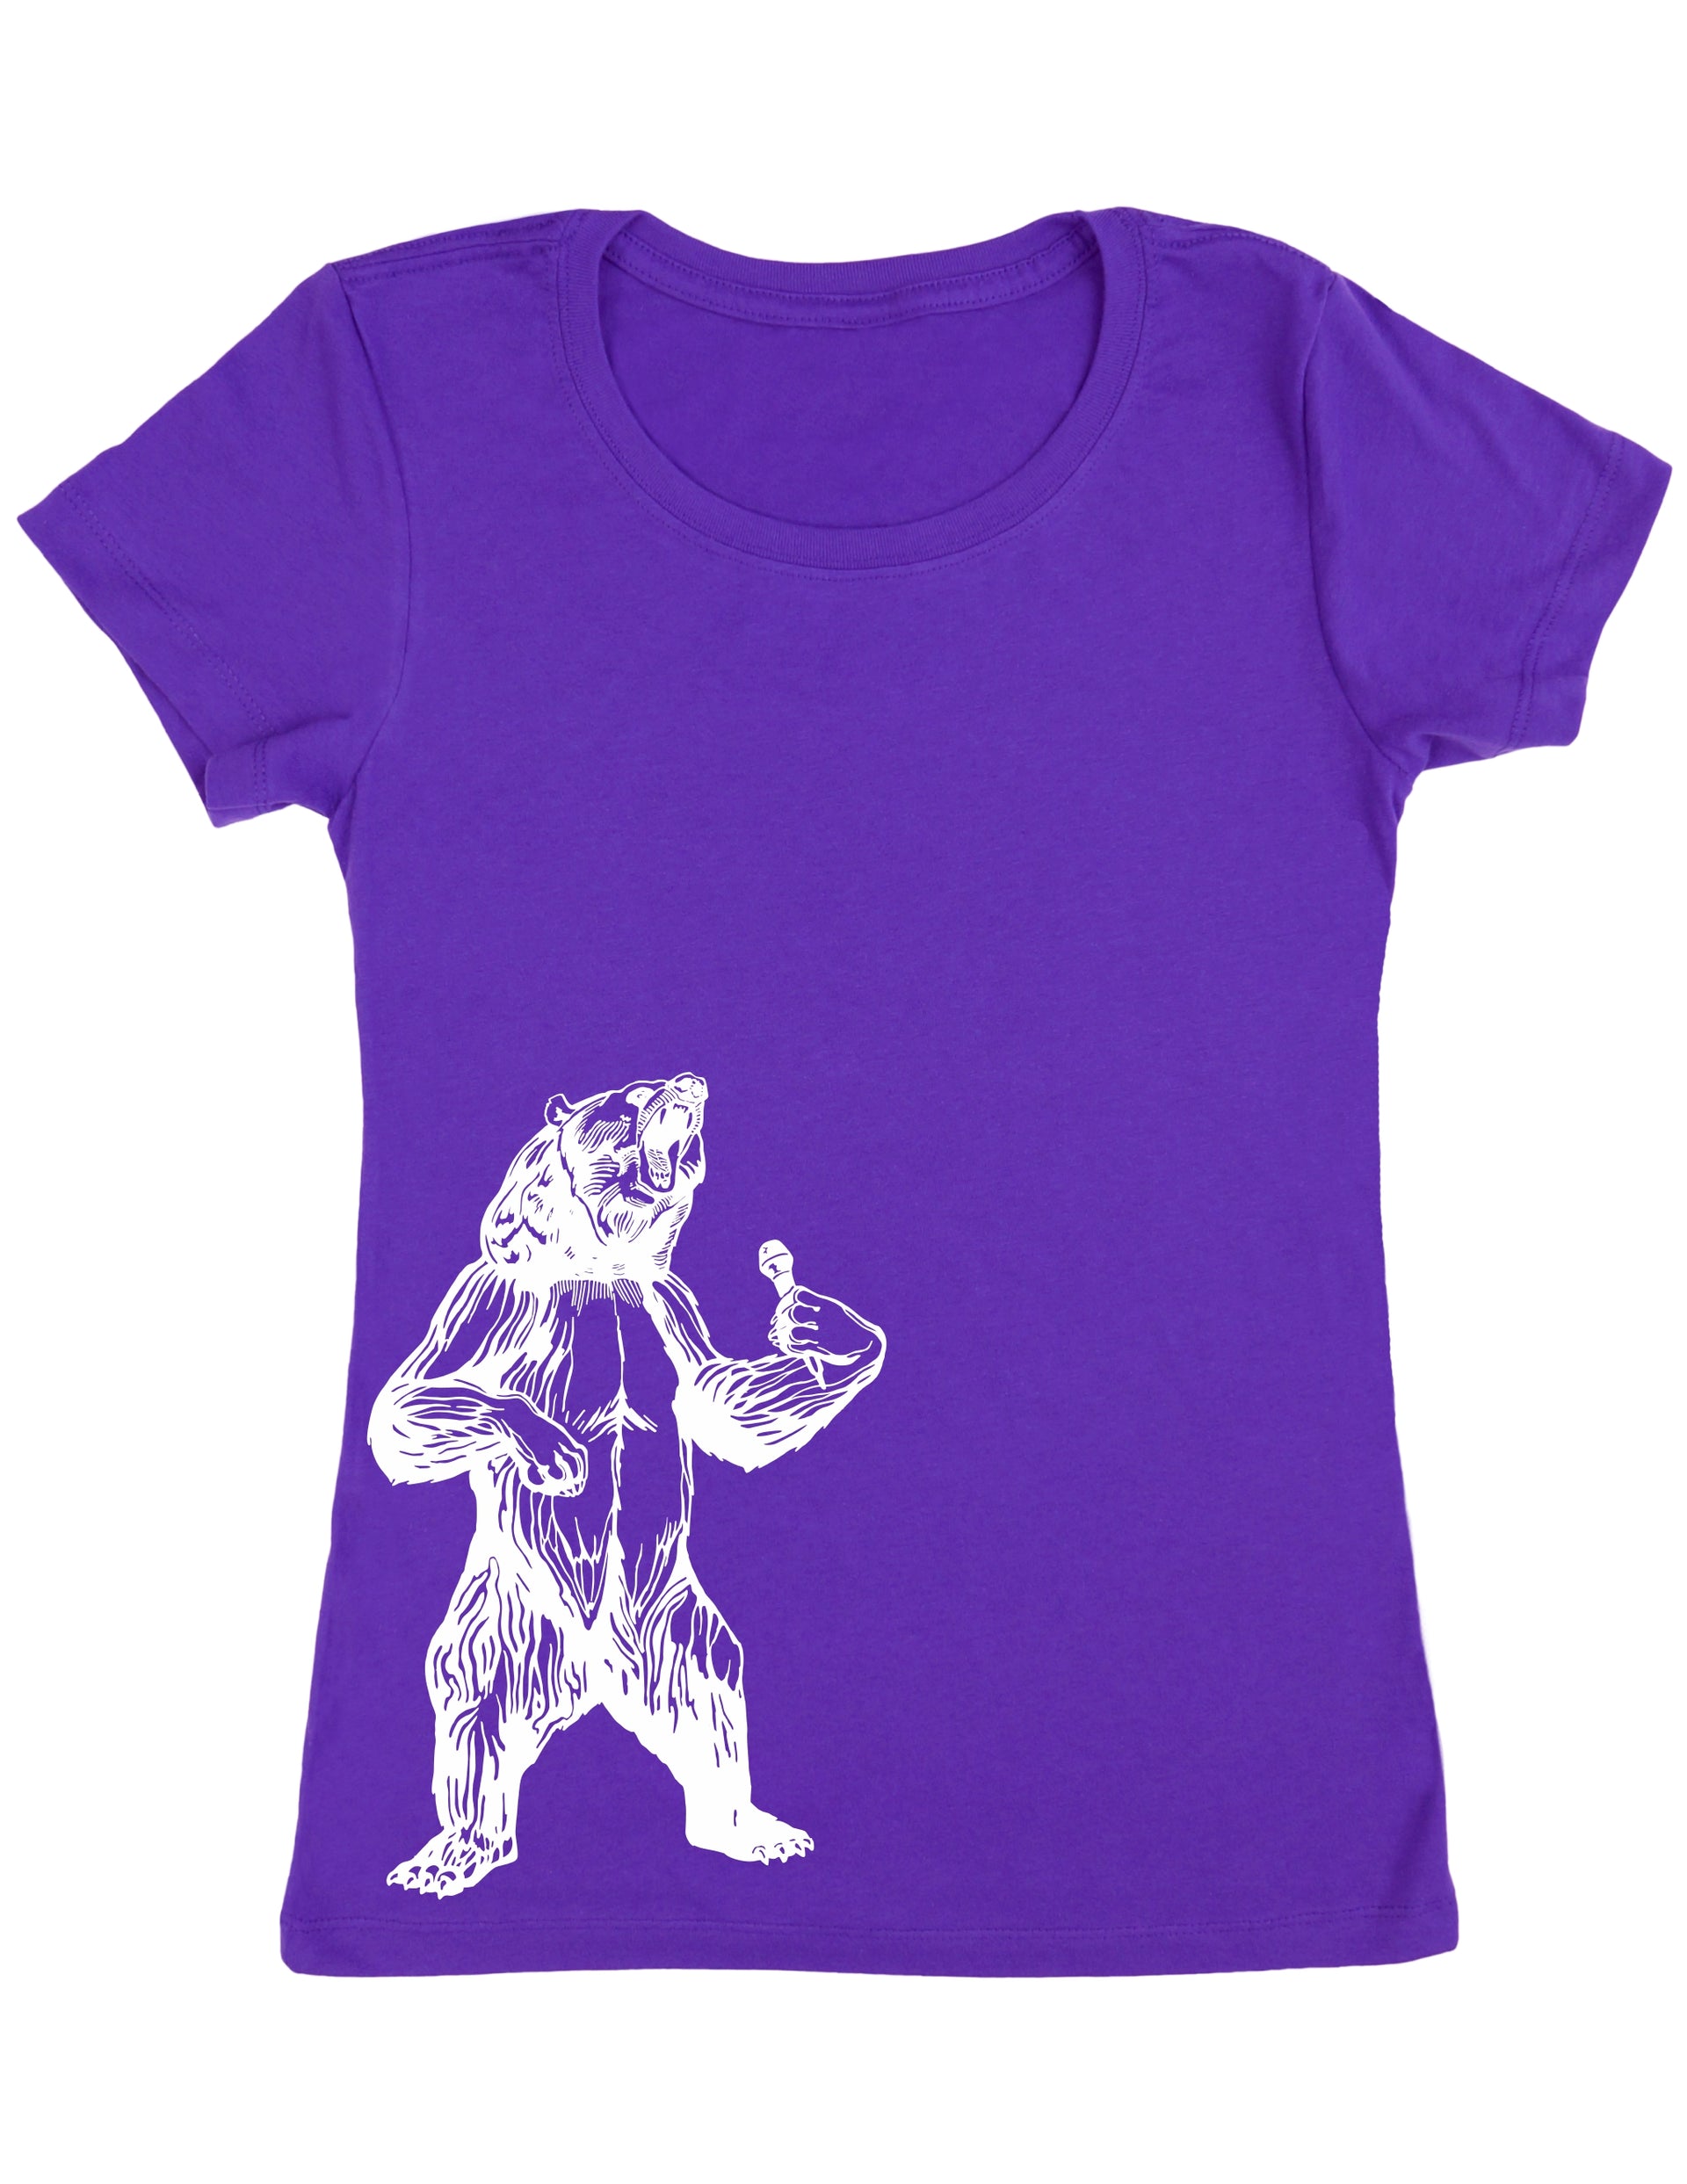 IPE66S-Seembo-Bear-Karaoke-Singer-Women-T-Shirt-1510-purple